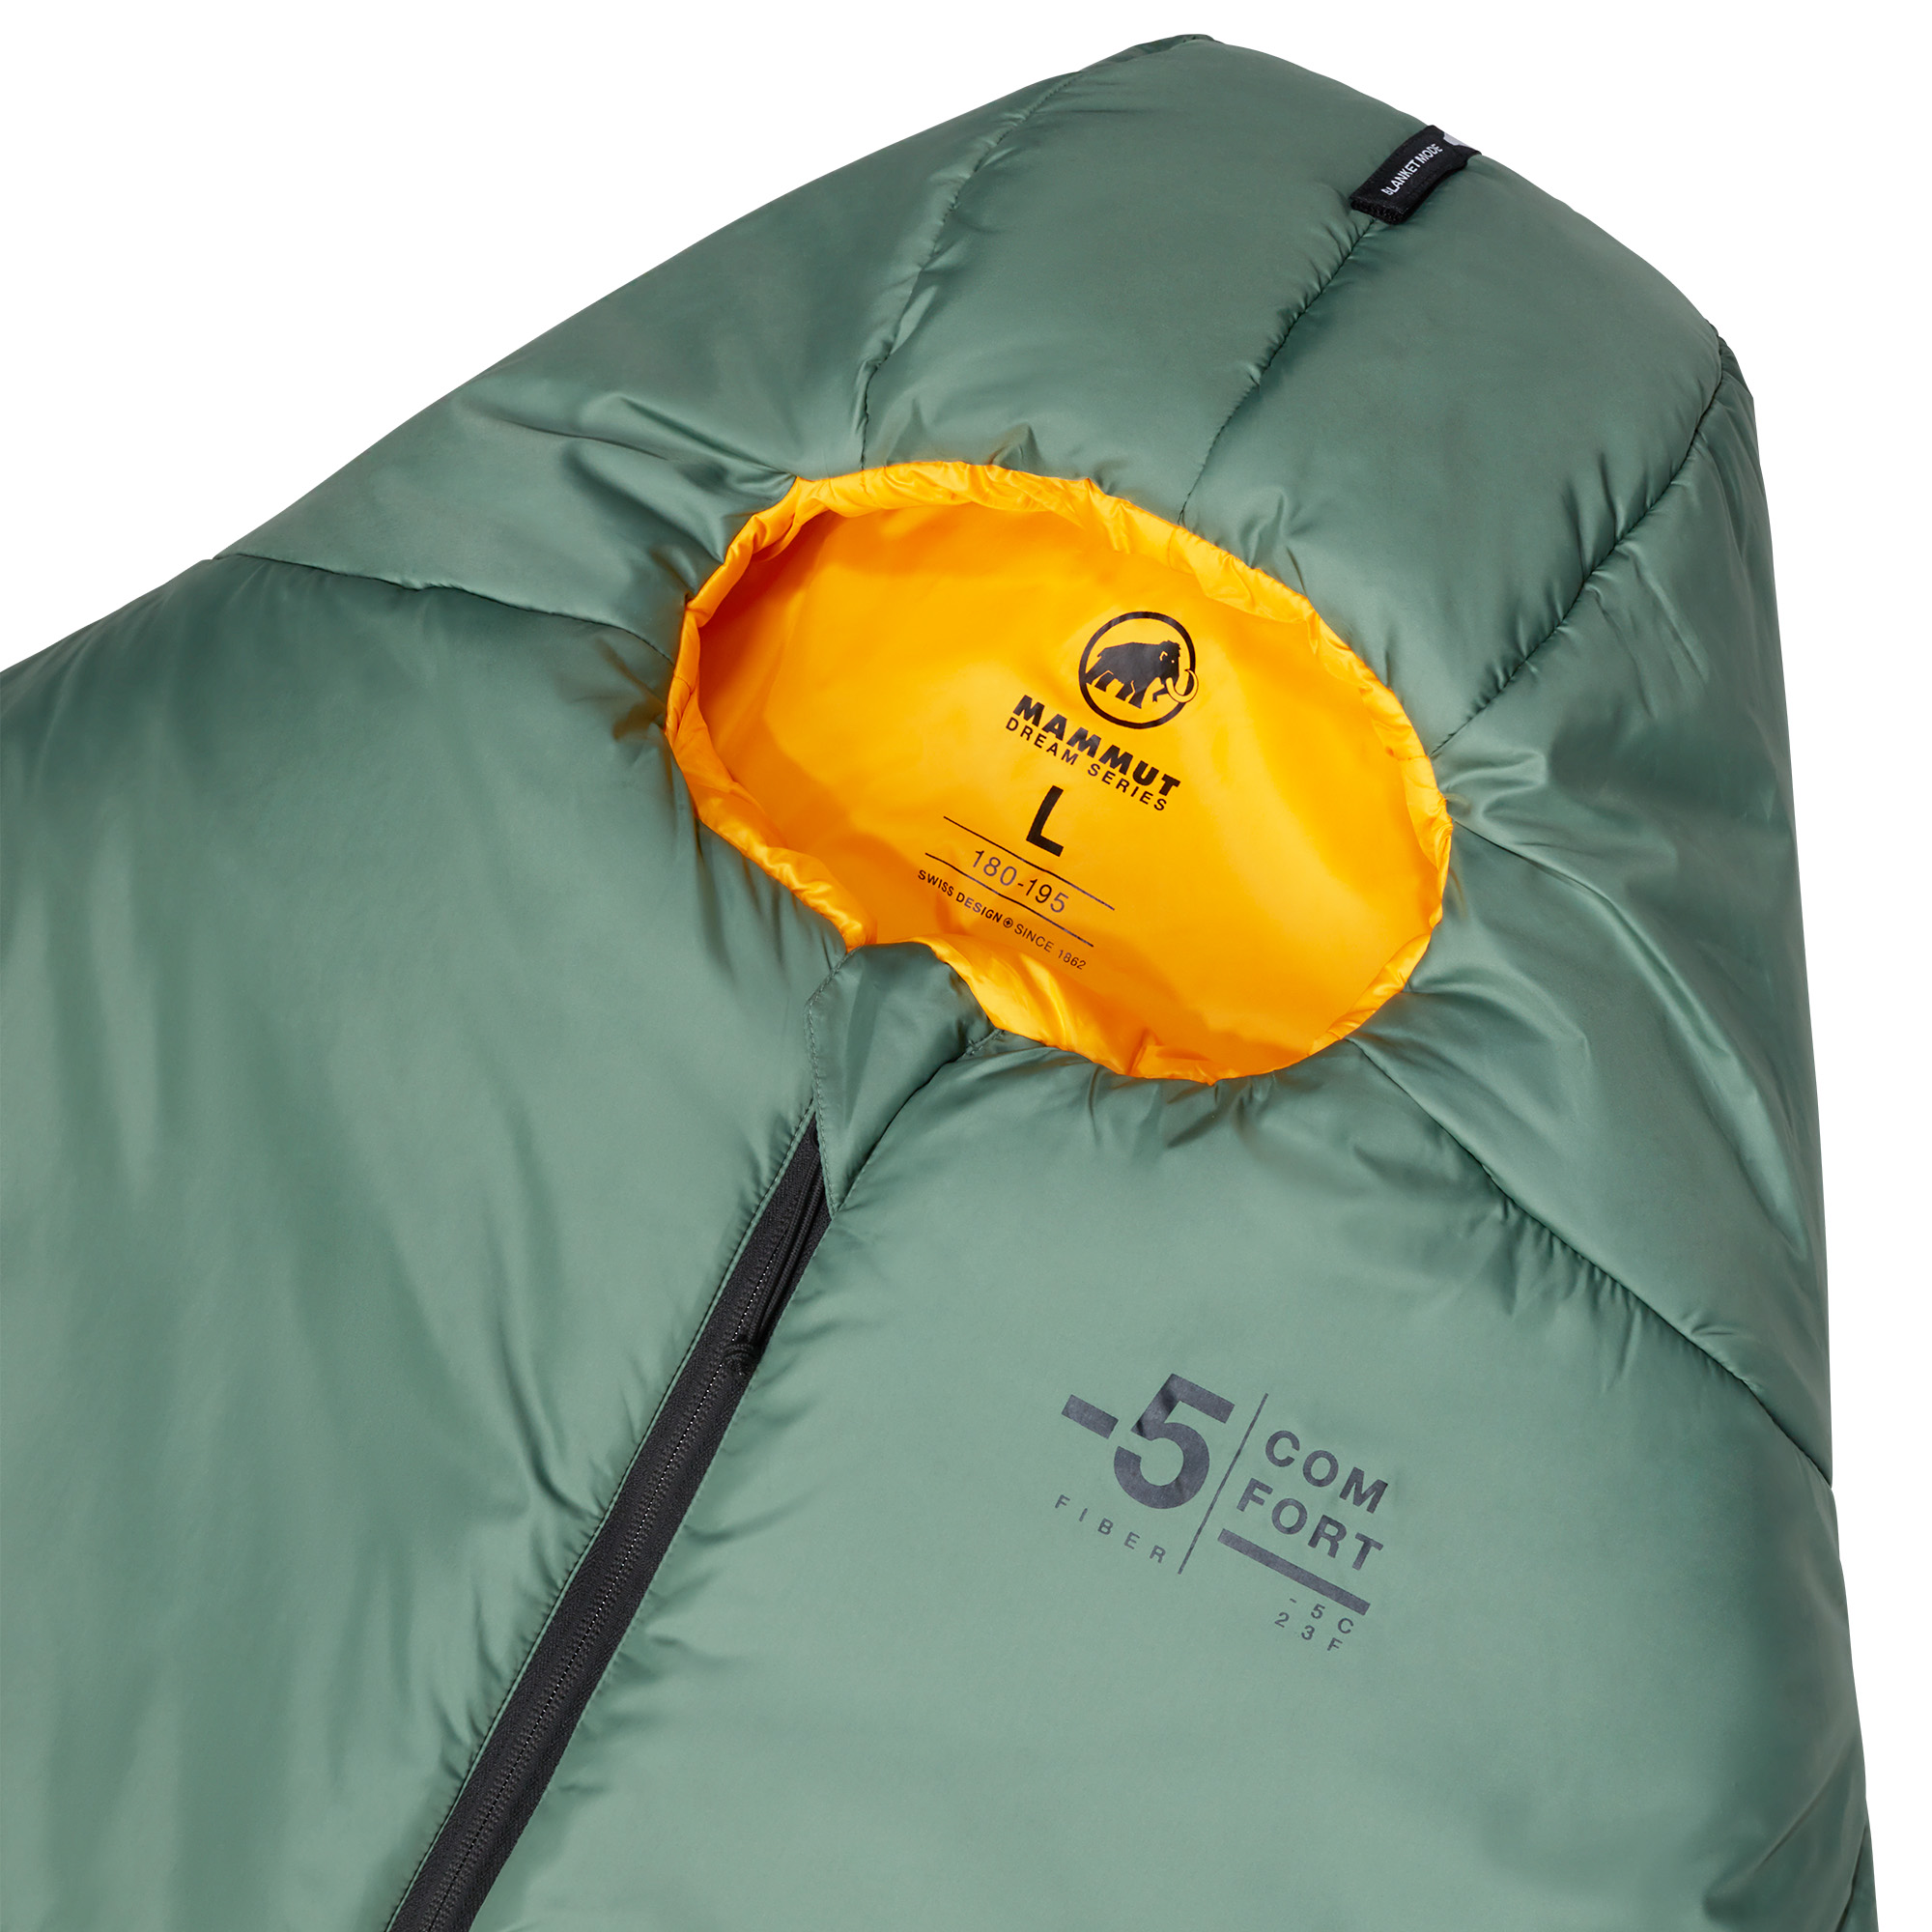 Mammut Comfort Fiber Bag -5C Lightweight Sleeping Bag